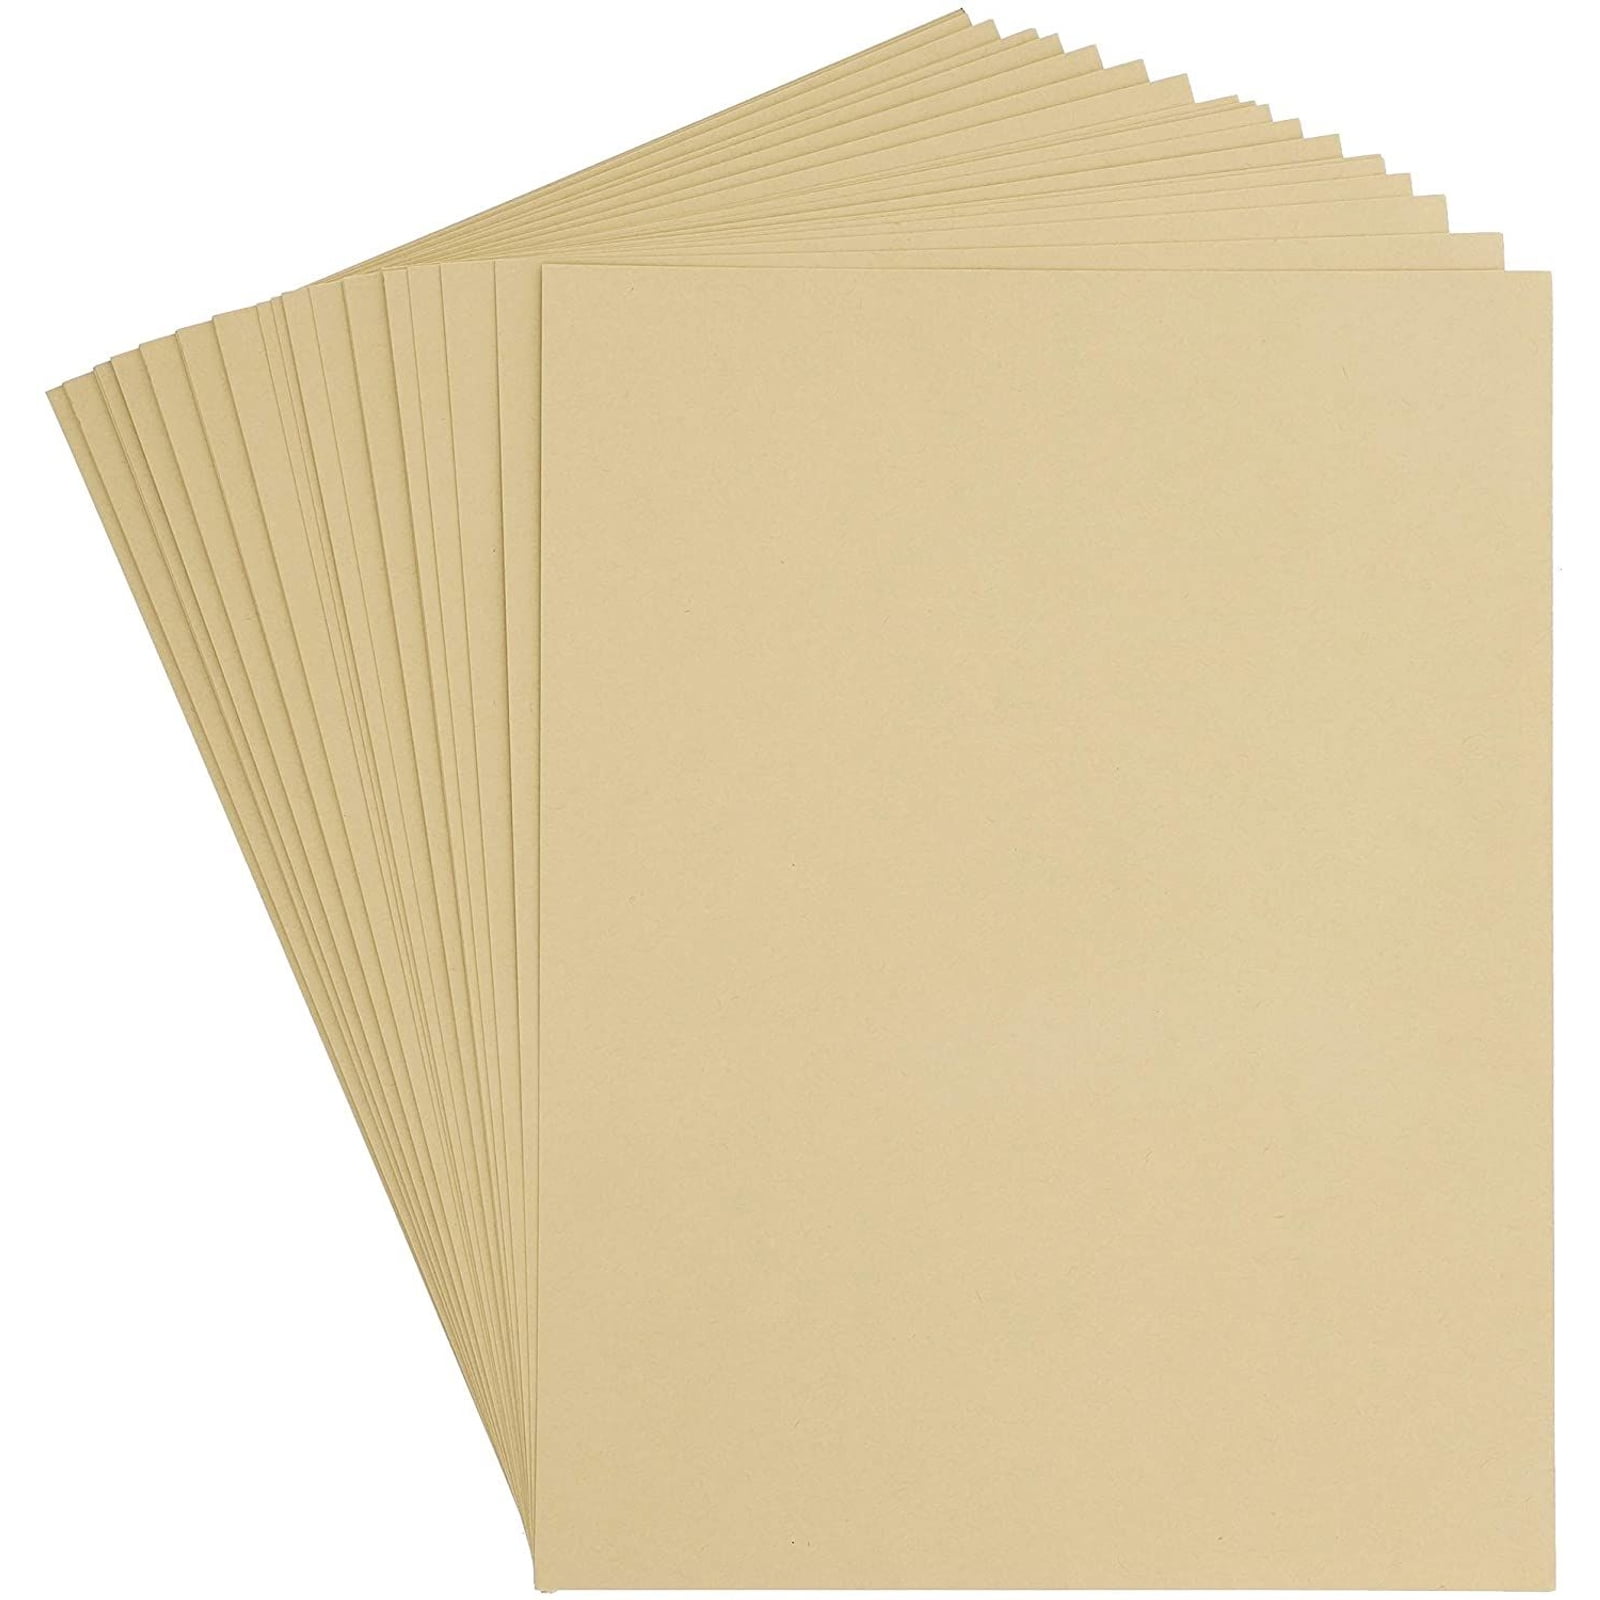 11 x 17" Brown Kraft Cardstock Paper80lb 216gsm Cover50 per Pack 